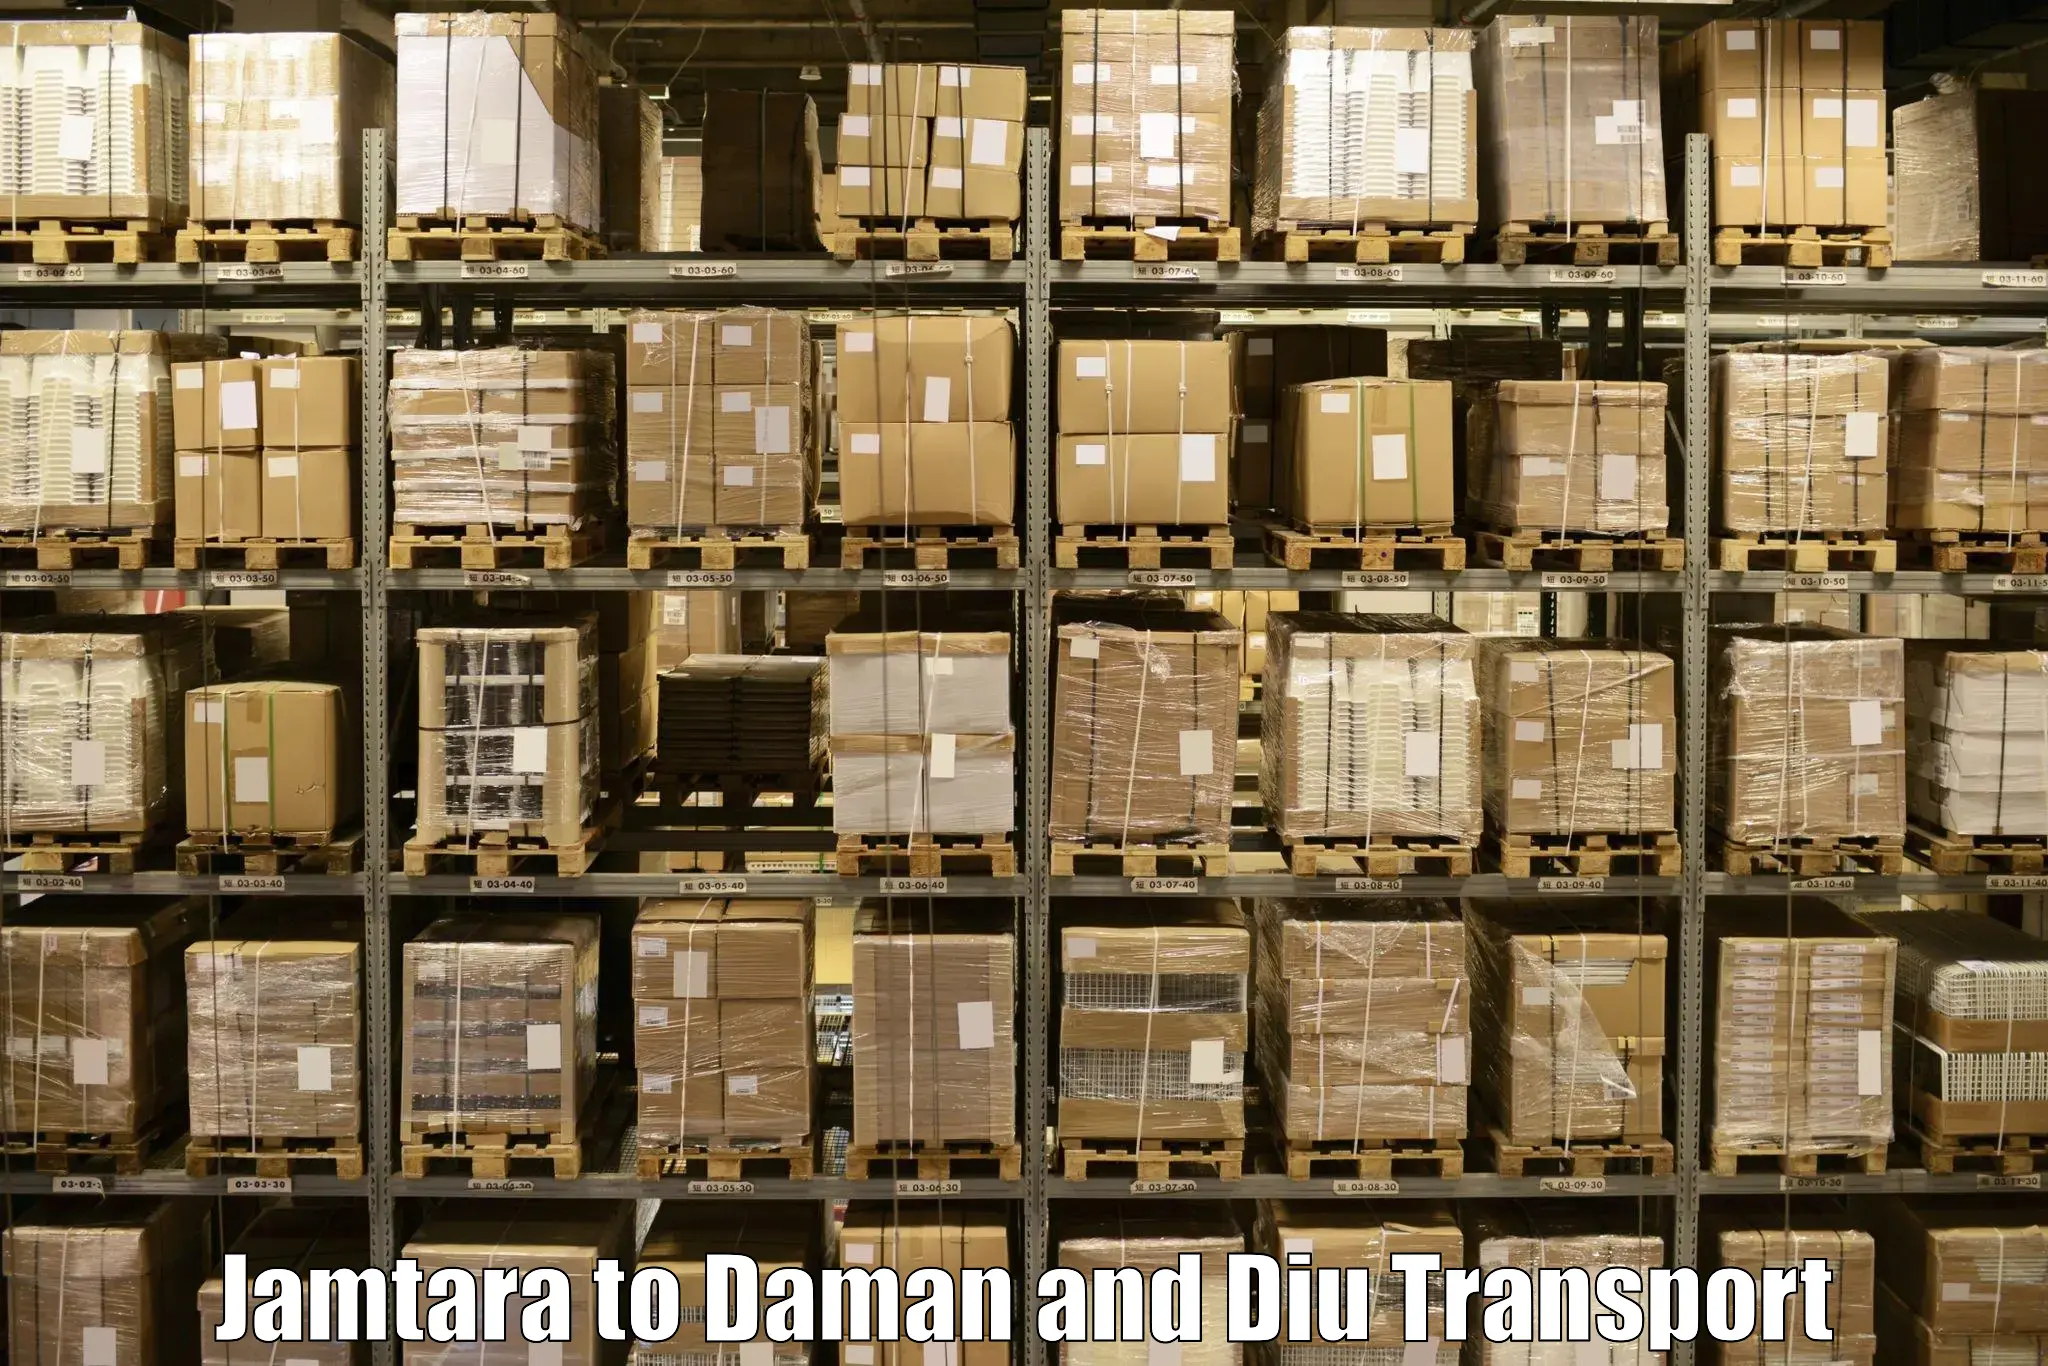 Pick up transport service Jamtara to Daman and Diu